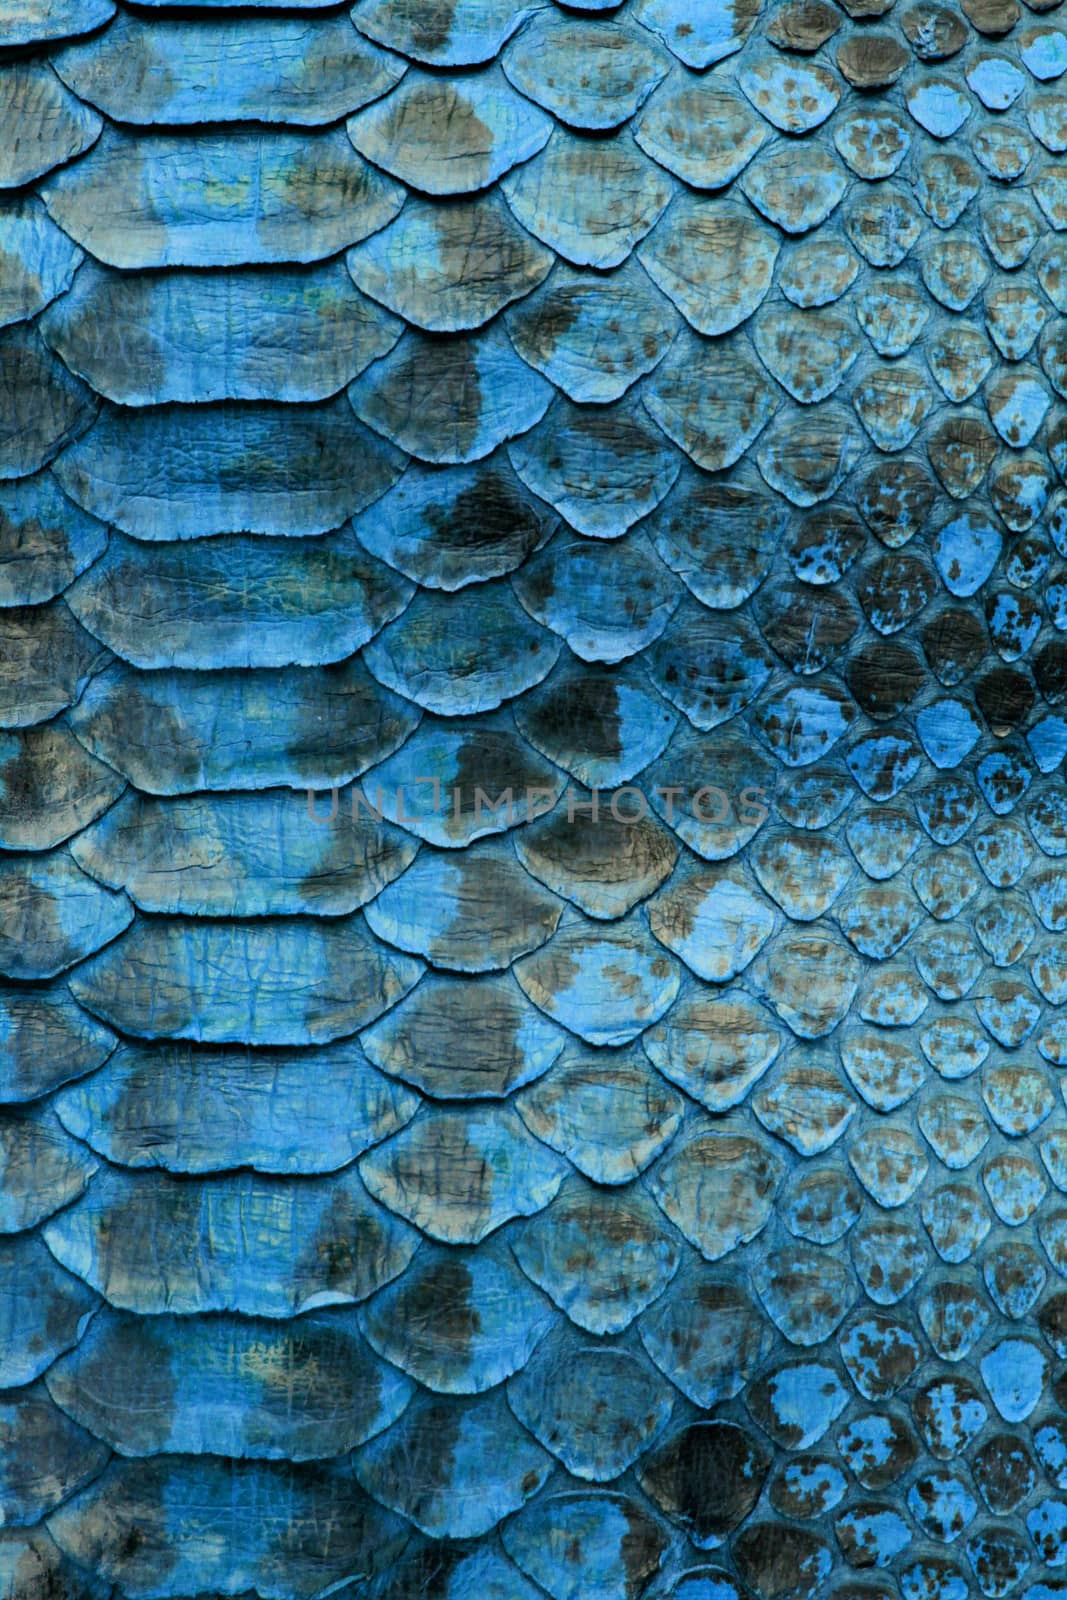 Coloured Real Snake Skin Snakeskin Animal Print Background by shellystill